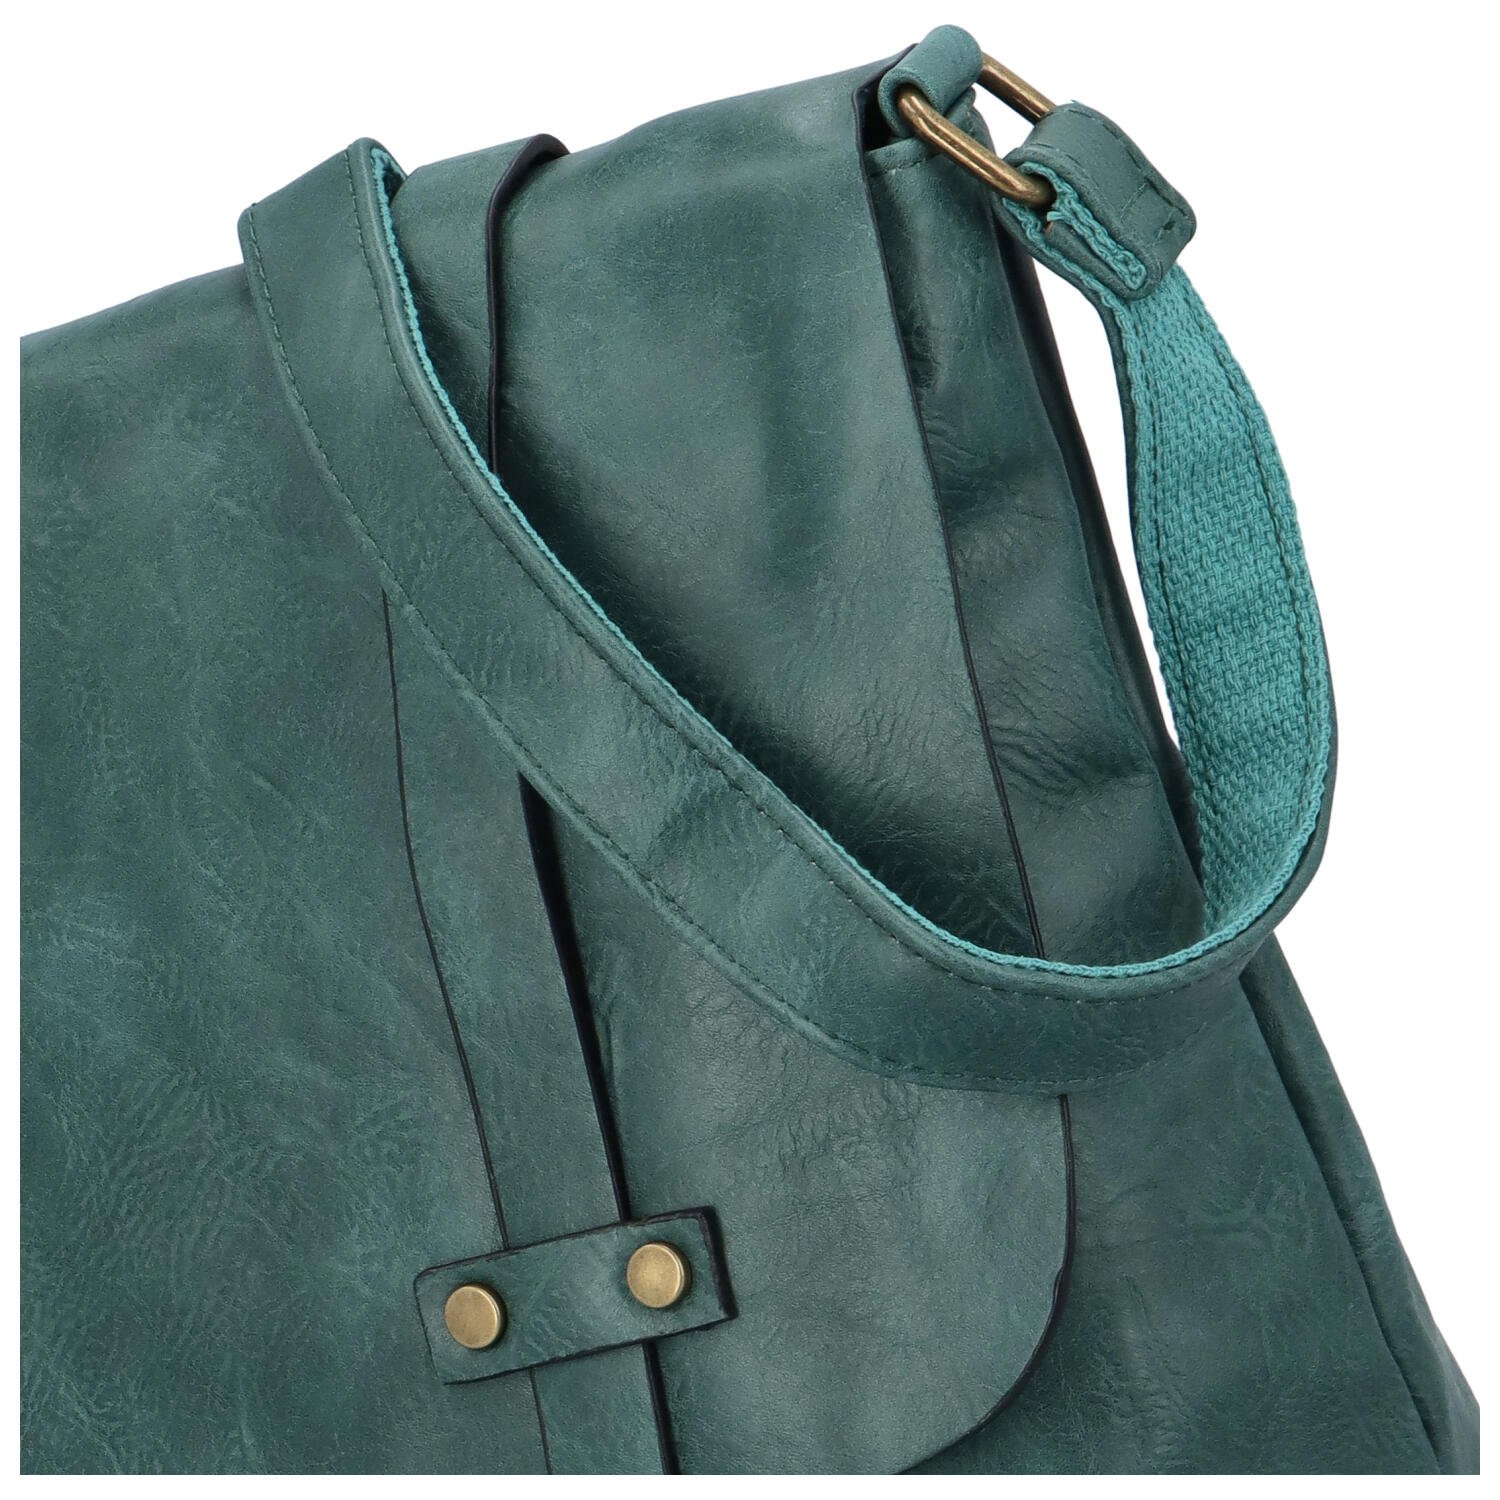 Větší dámská crossbody tašky s výraznou klopou Efima, zelená.